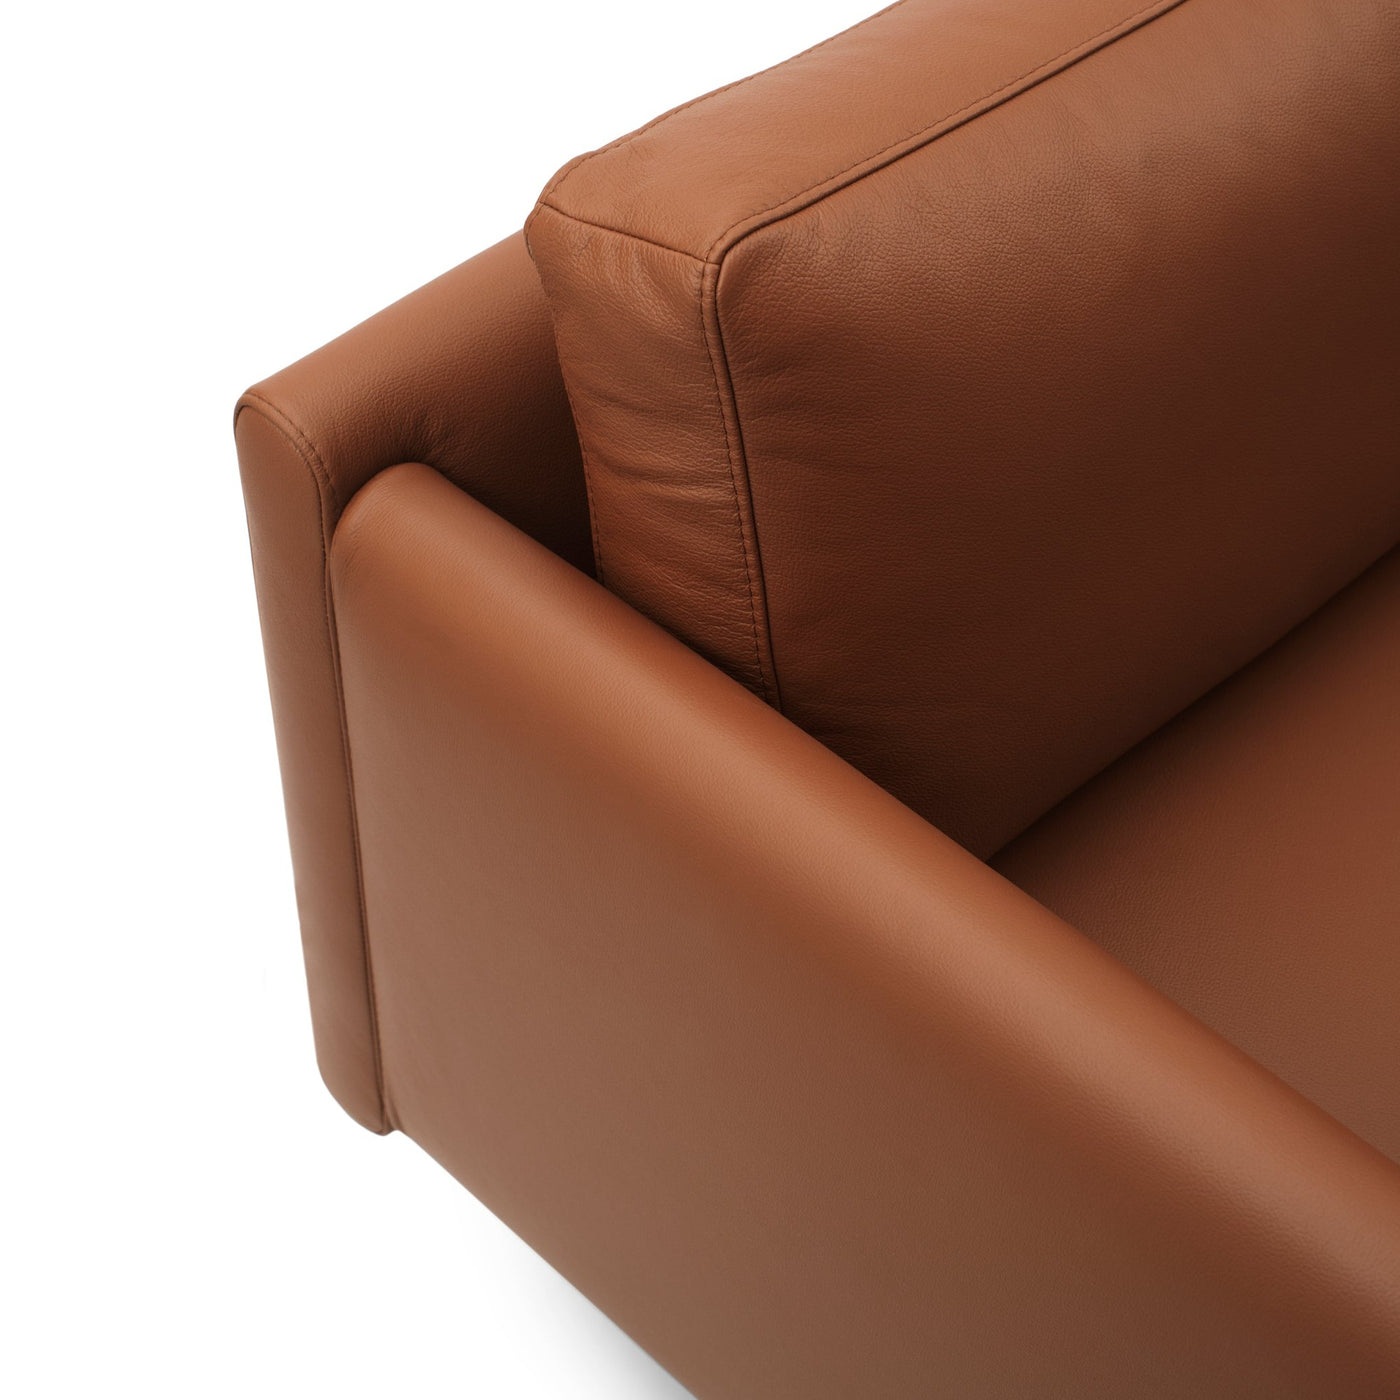 Normann Copenhagen Rar 2 Seater Sofa at someday designs. #colour_omaha-leather-cognac